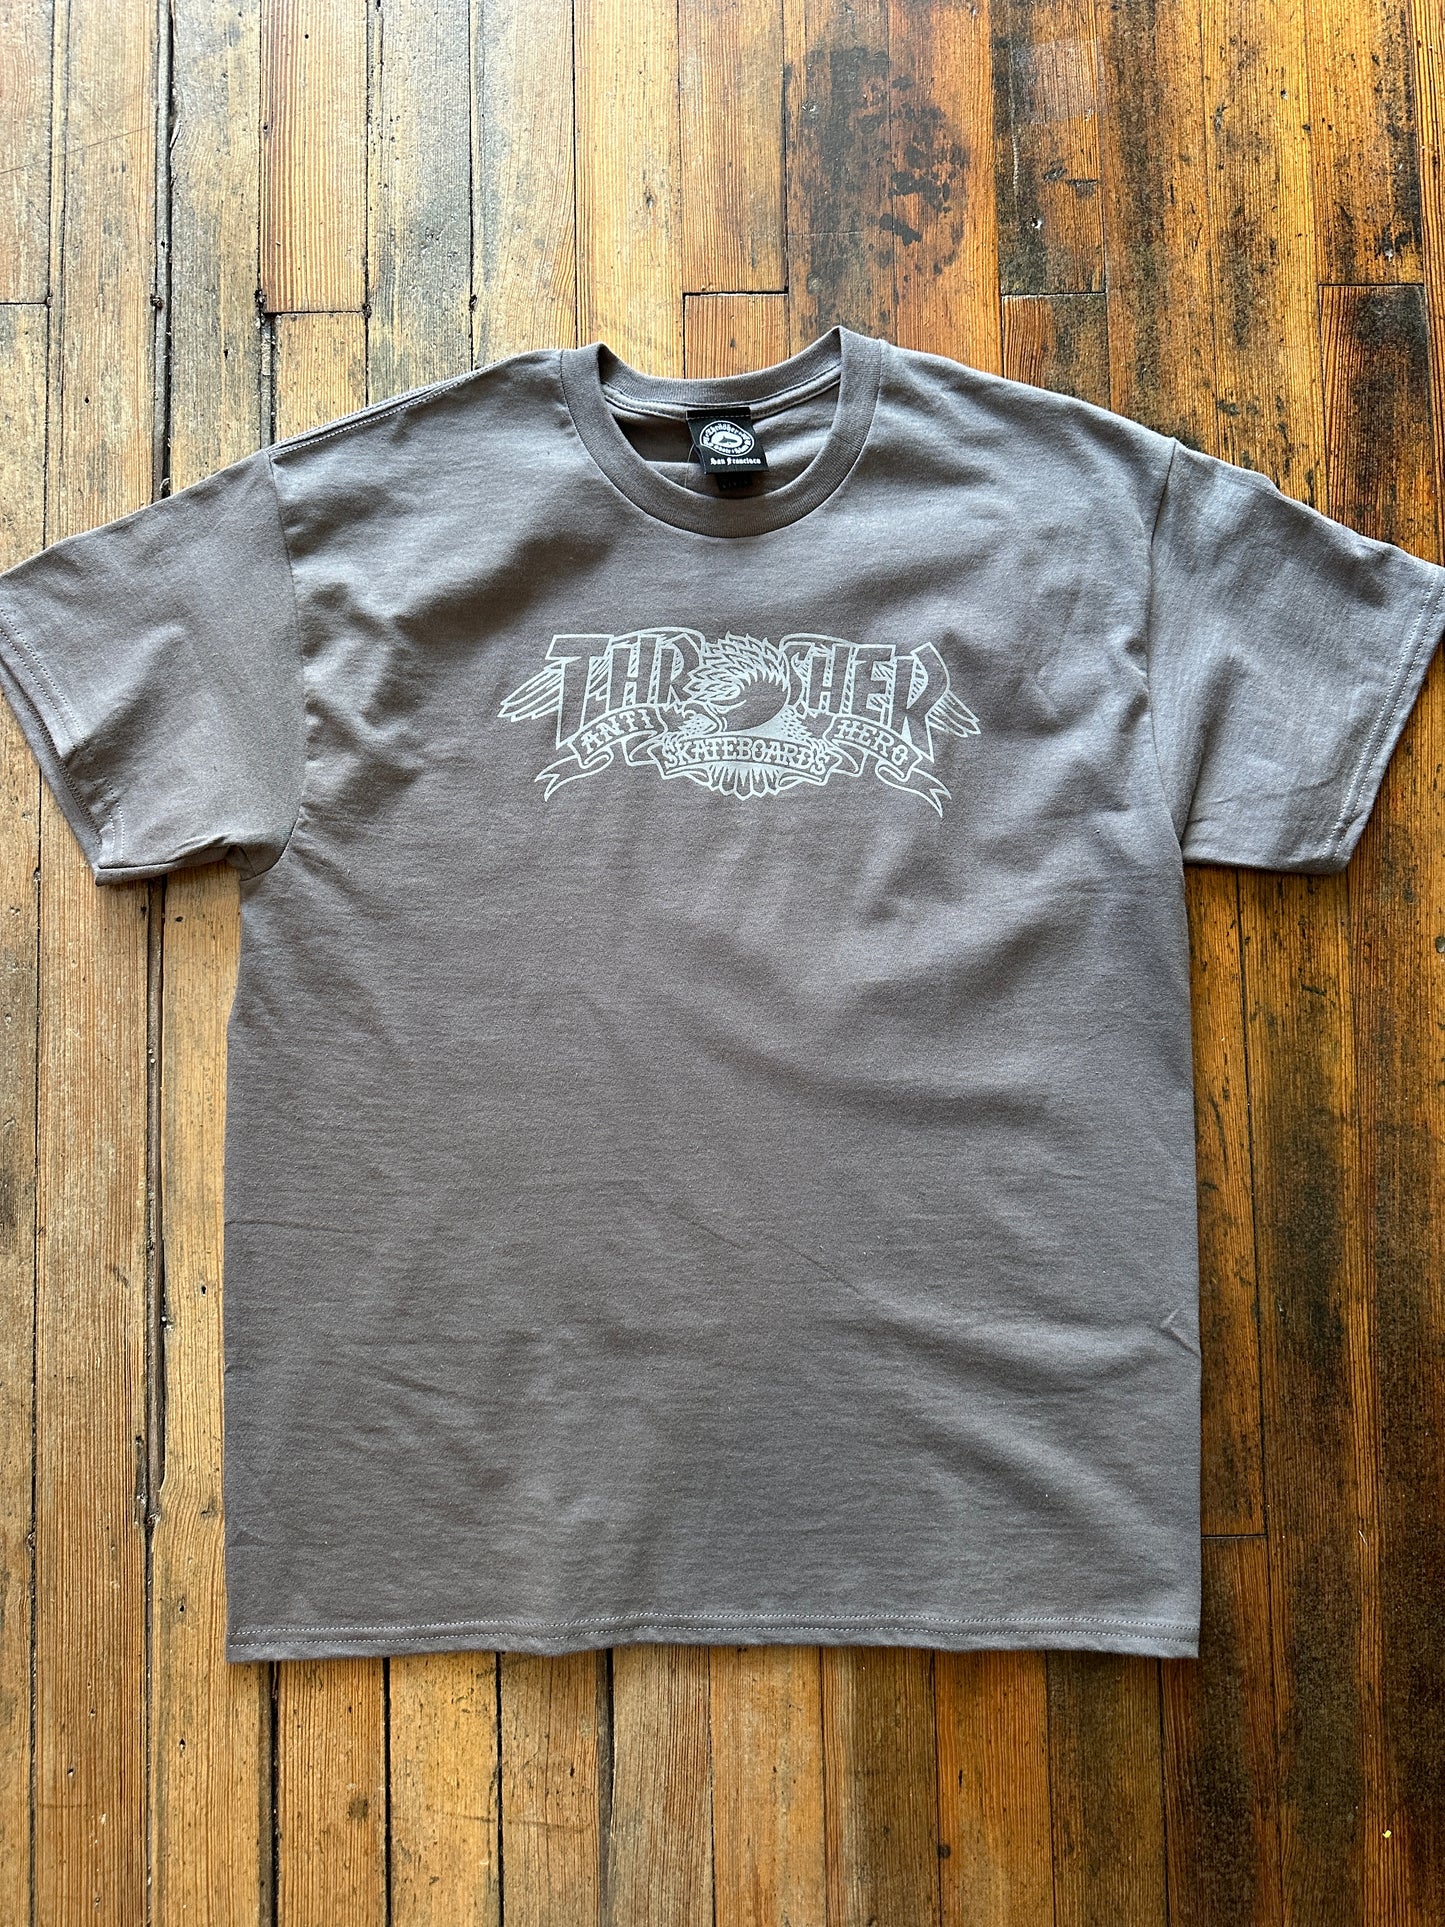 Thrasher - Antihero Mag Banner Grey Tshirt